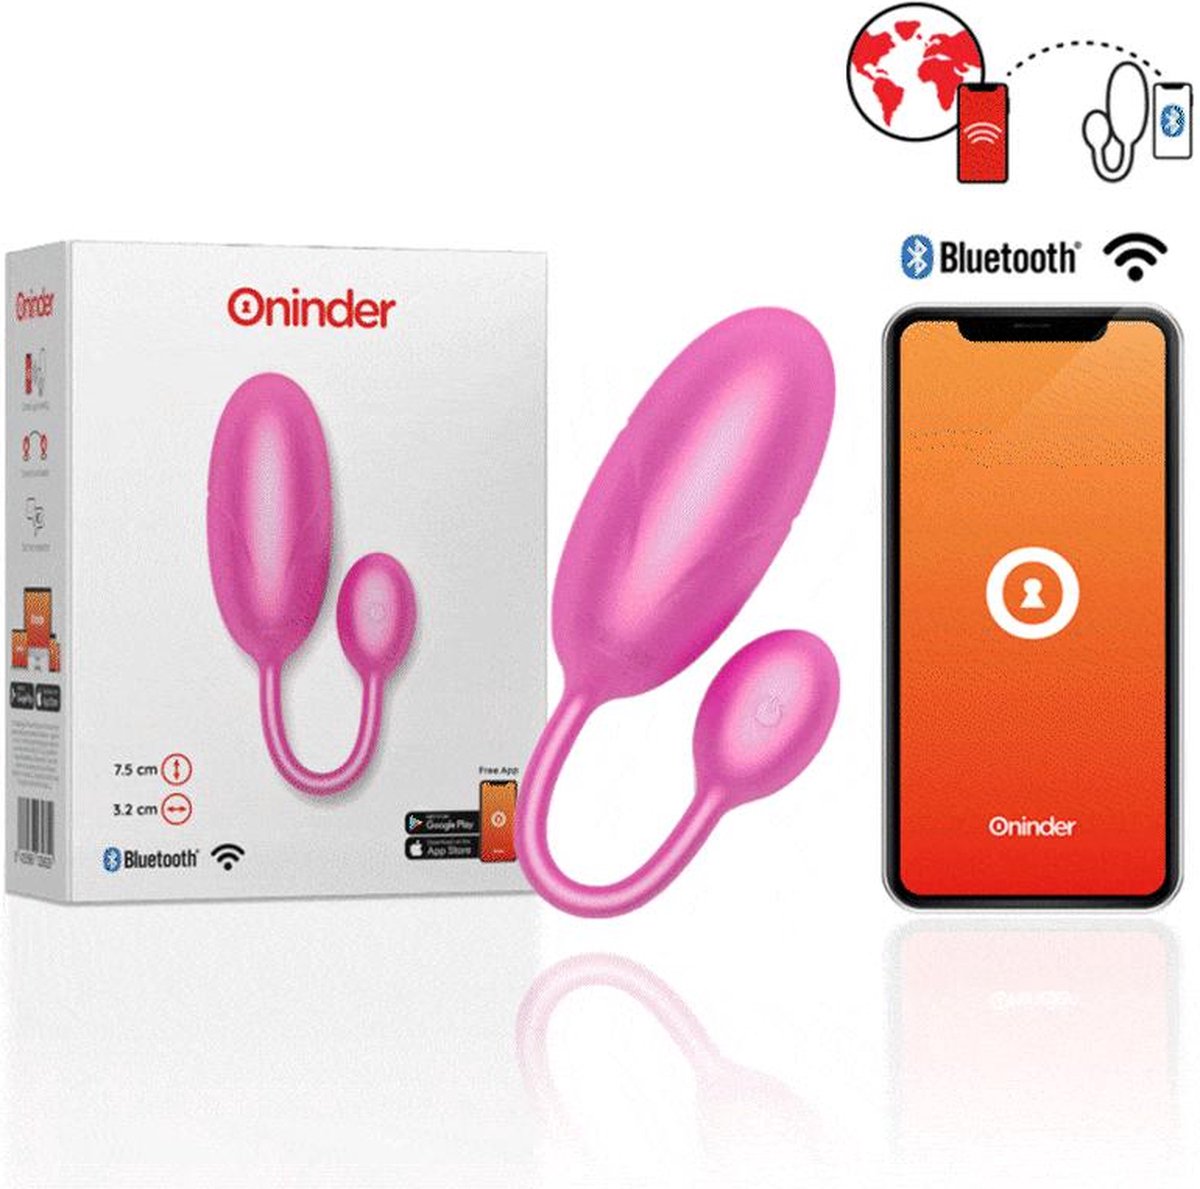 ONINDER | Oninder - Tokyo Vibrating Egg Pink 7.5 X 3.2 Cm Free App